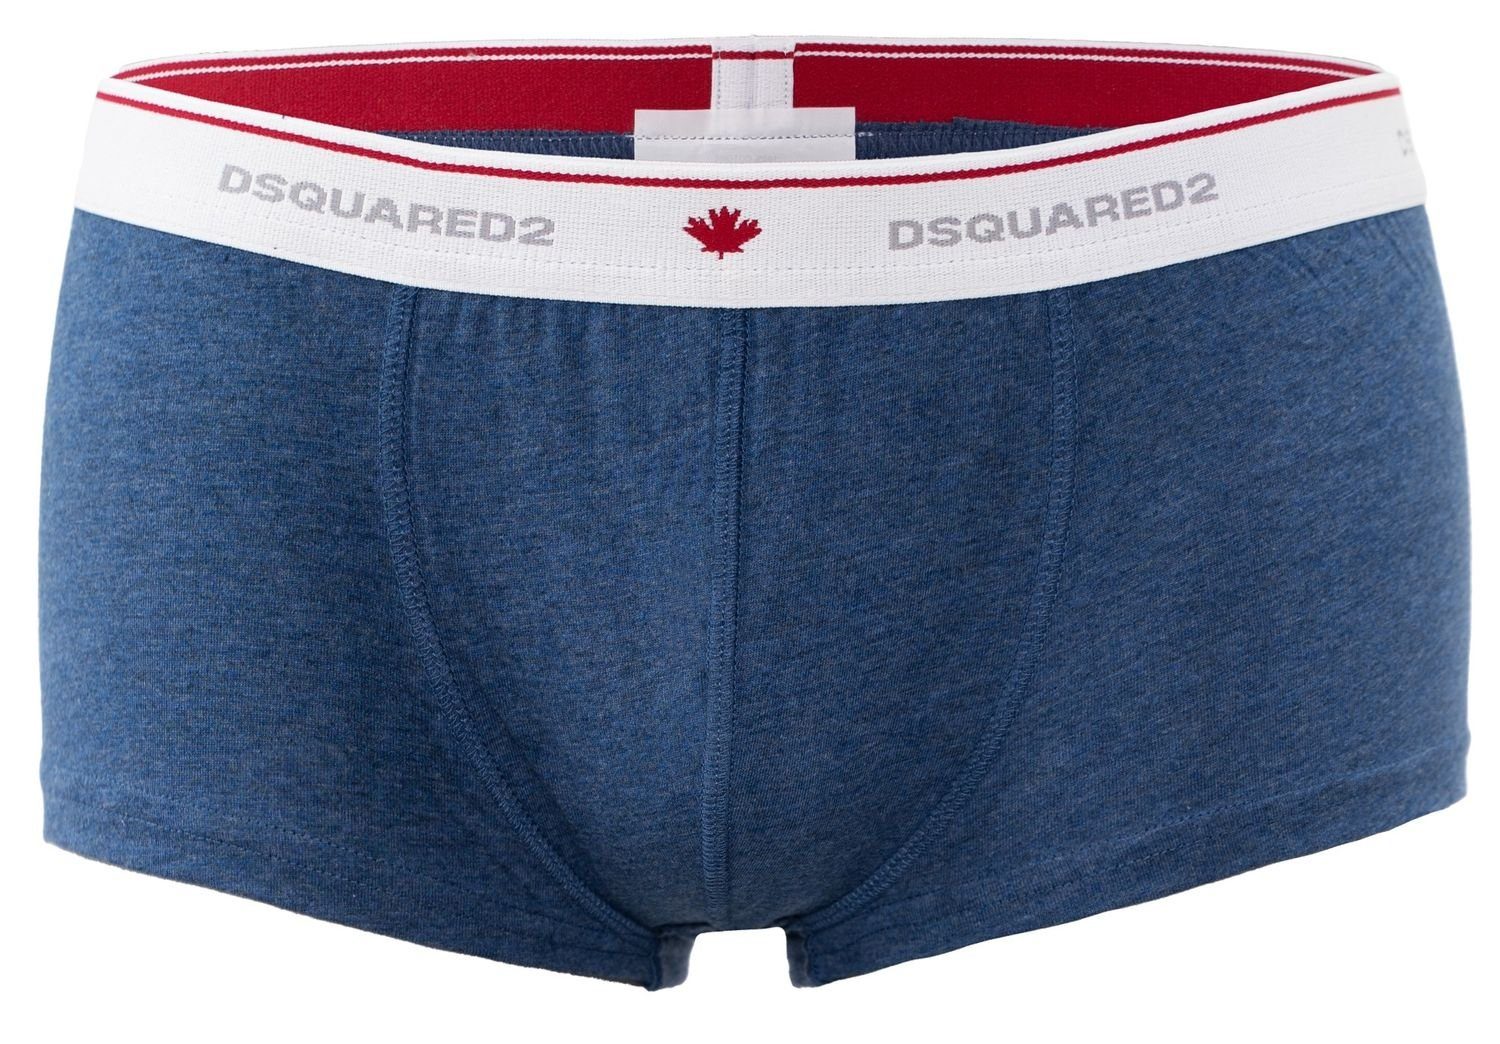 Dsquared2 Trunk Dsquared2 Boxershorts / Pants / Shorts / Boxer in blau Größe M / L / XL / XXL (1-St)